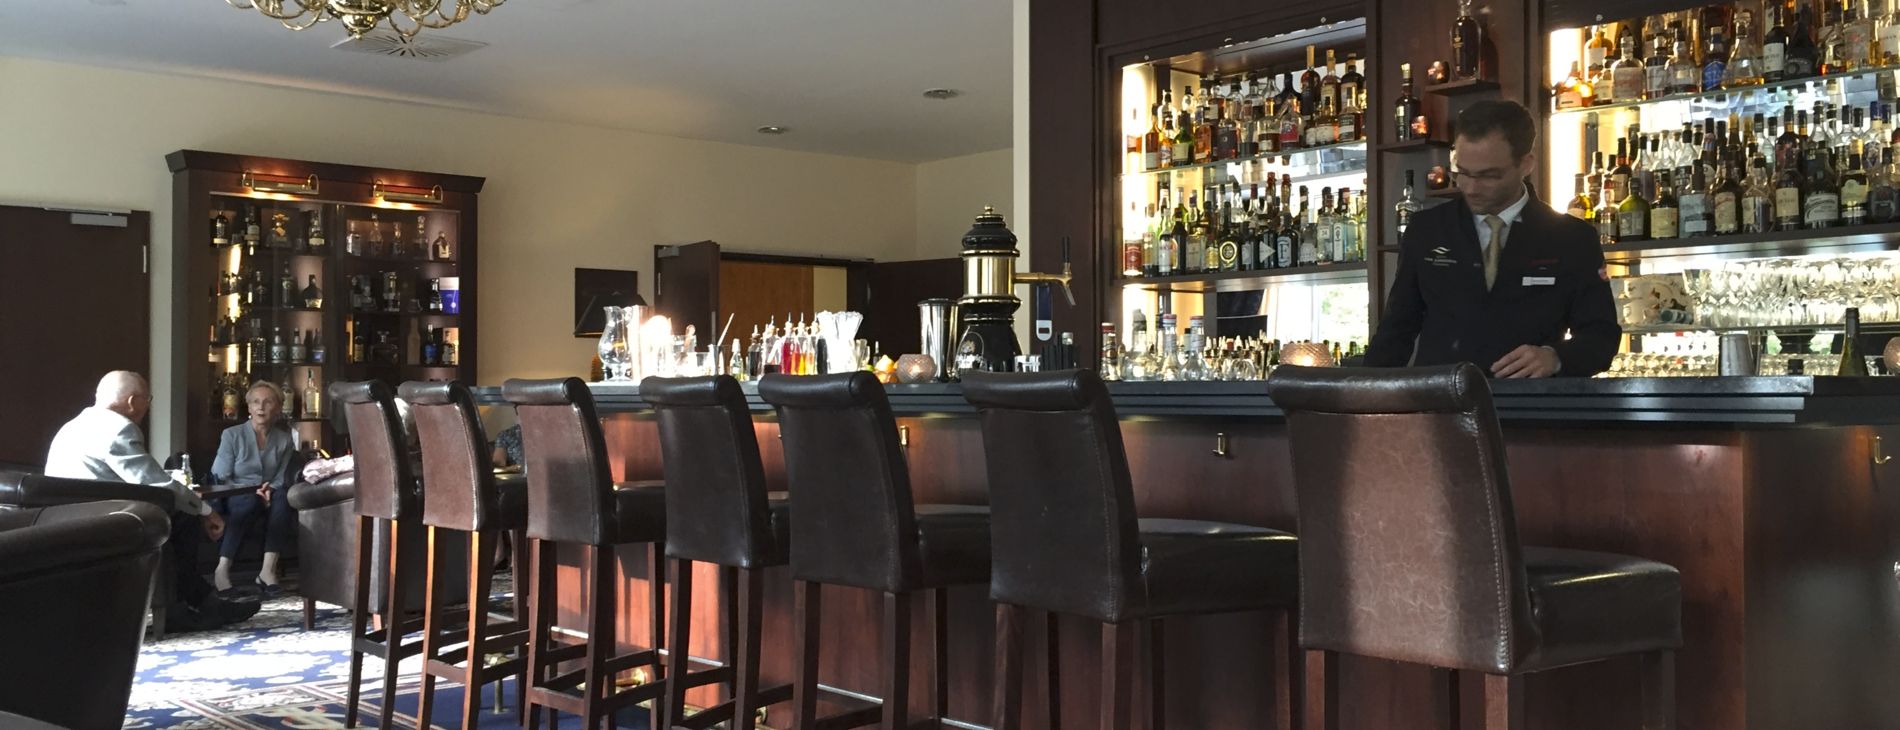 Barkeeper von Hemingwaybar im Hotel Vier Jahreszeiten Starnberg